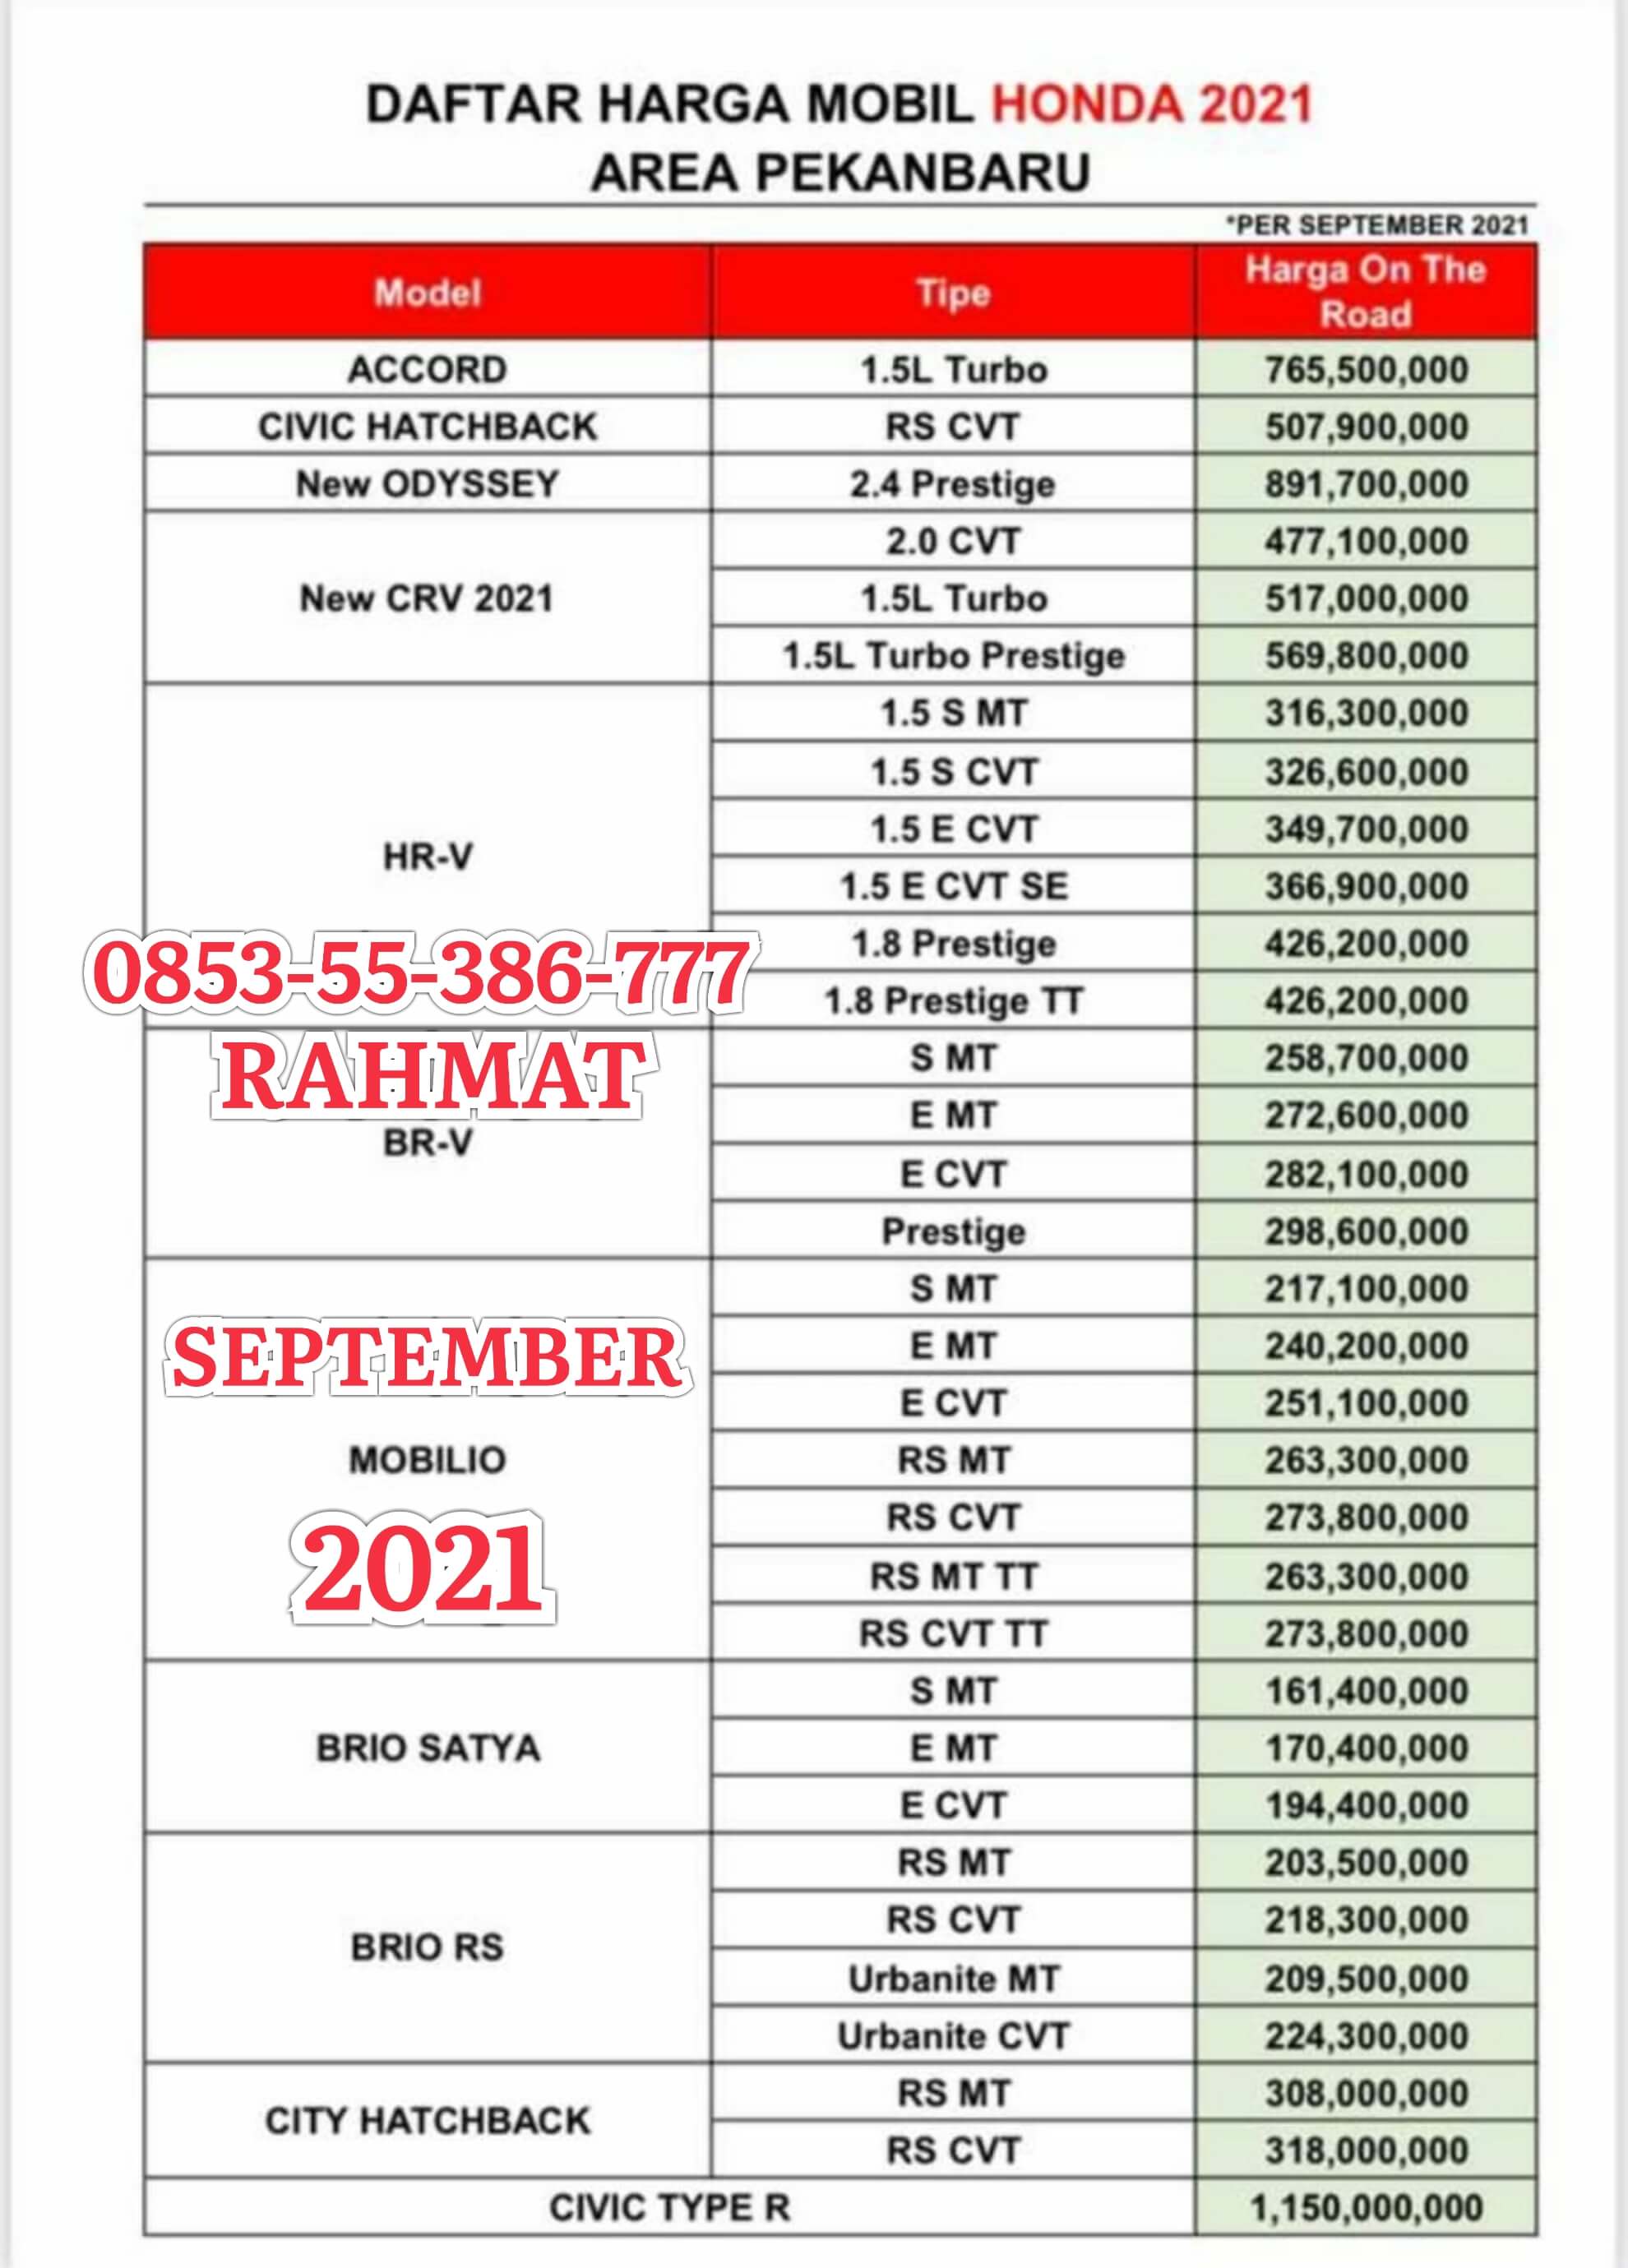 0853-55-386-777 | Promo Mobil Honda Pekanbaru | Harga Mobil Honda Pekanbaru | Dealer Showroom Mobil Honda Pekanbaru